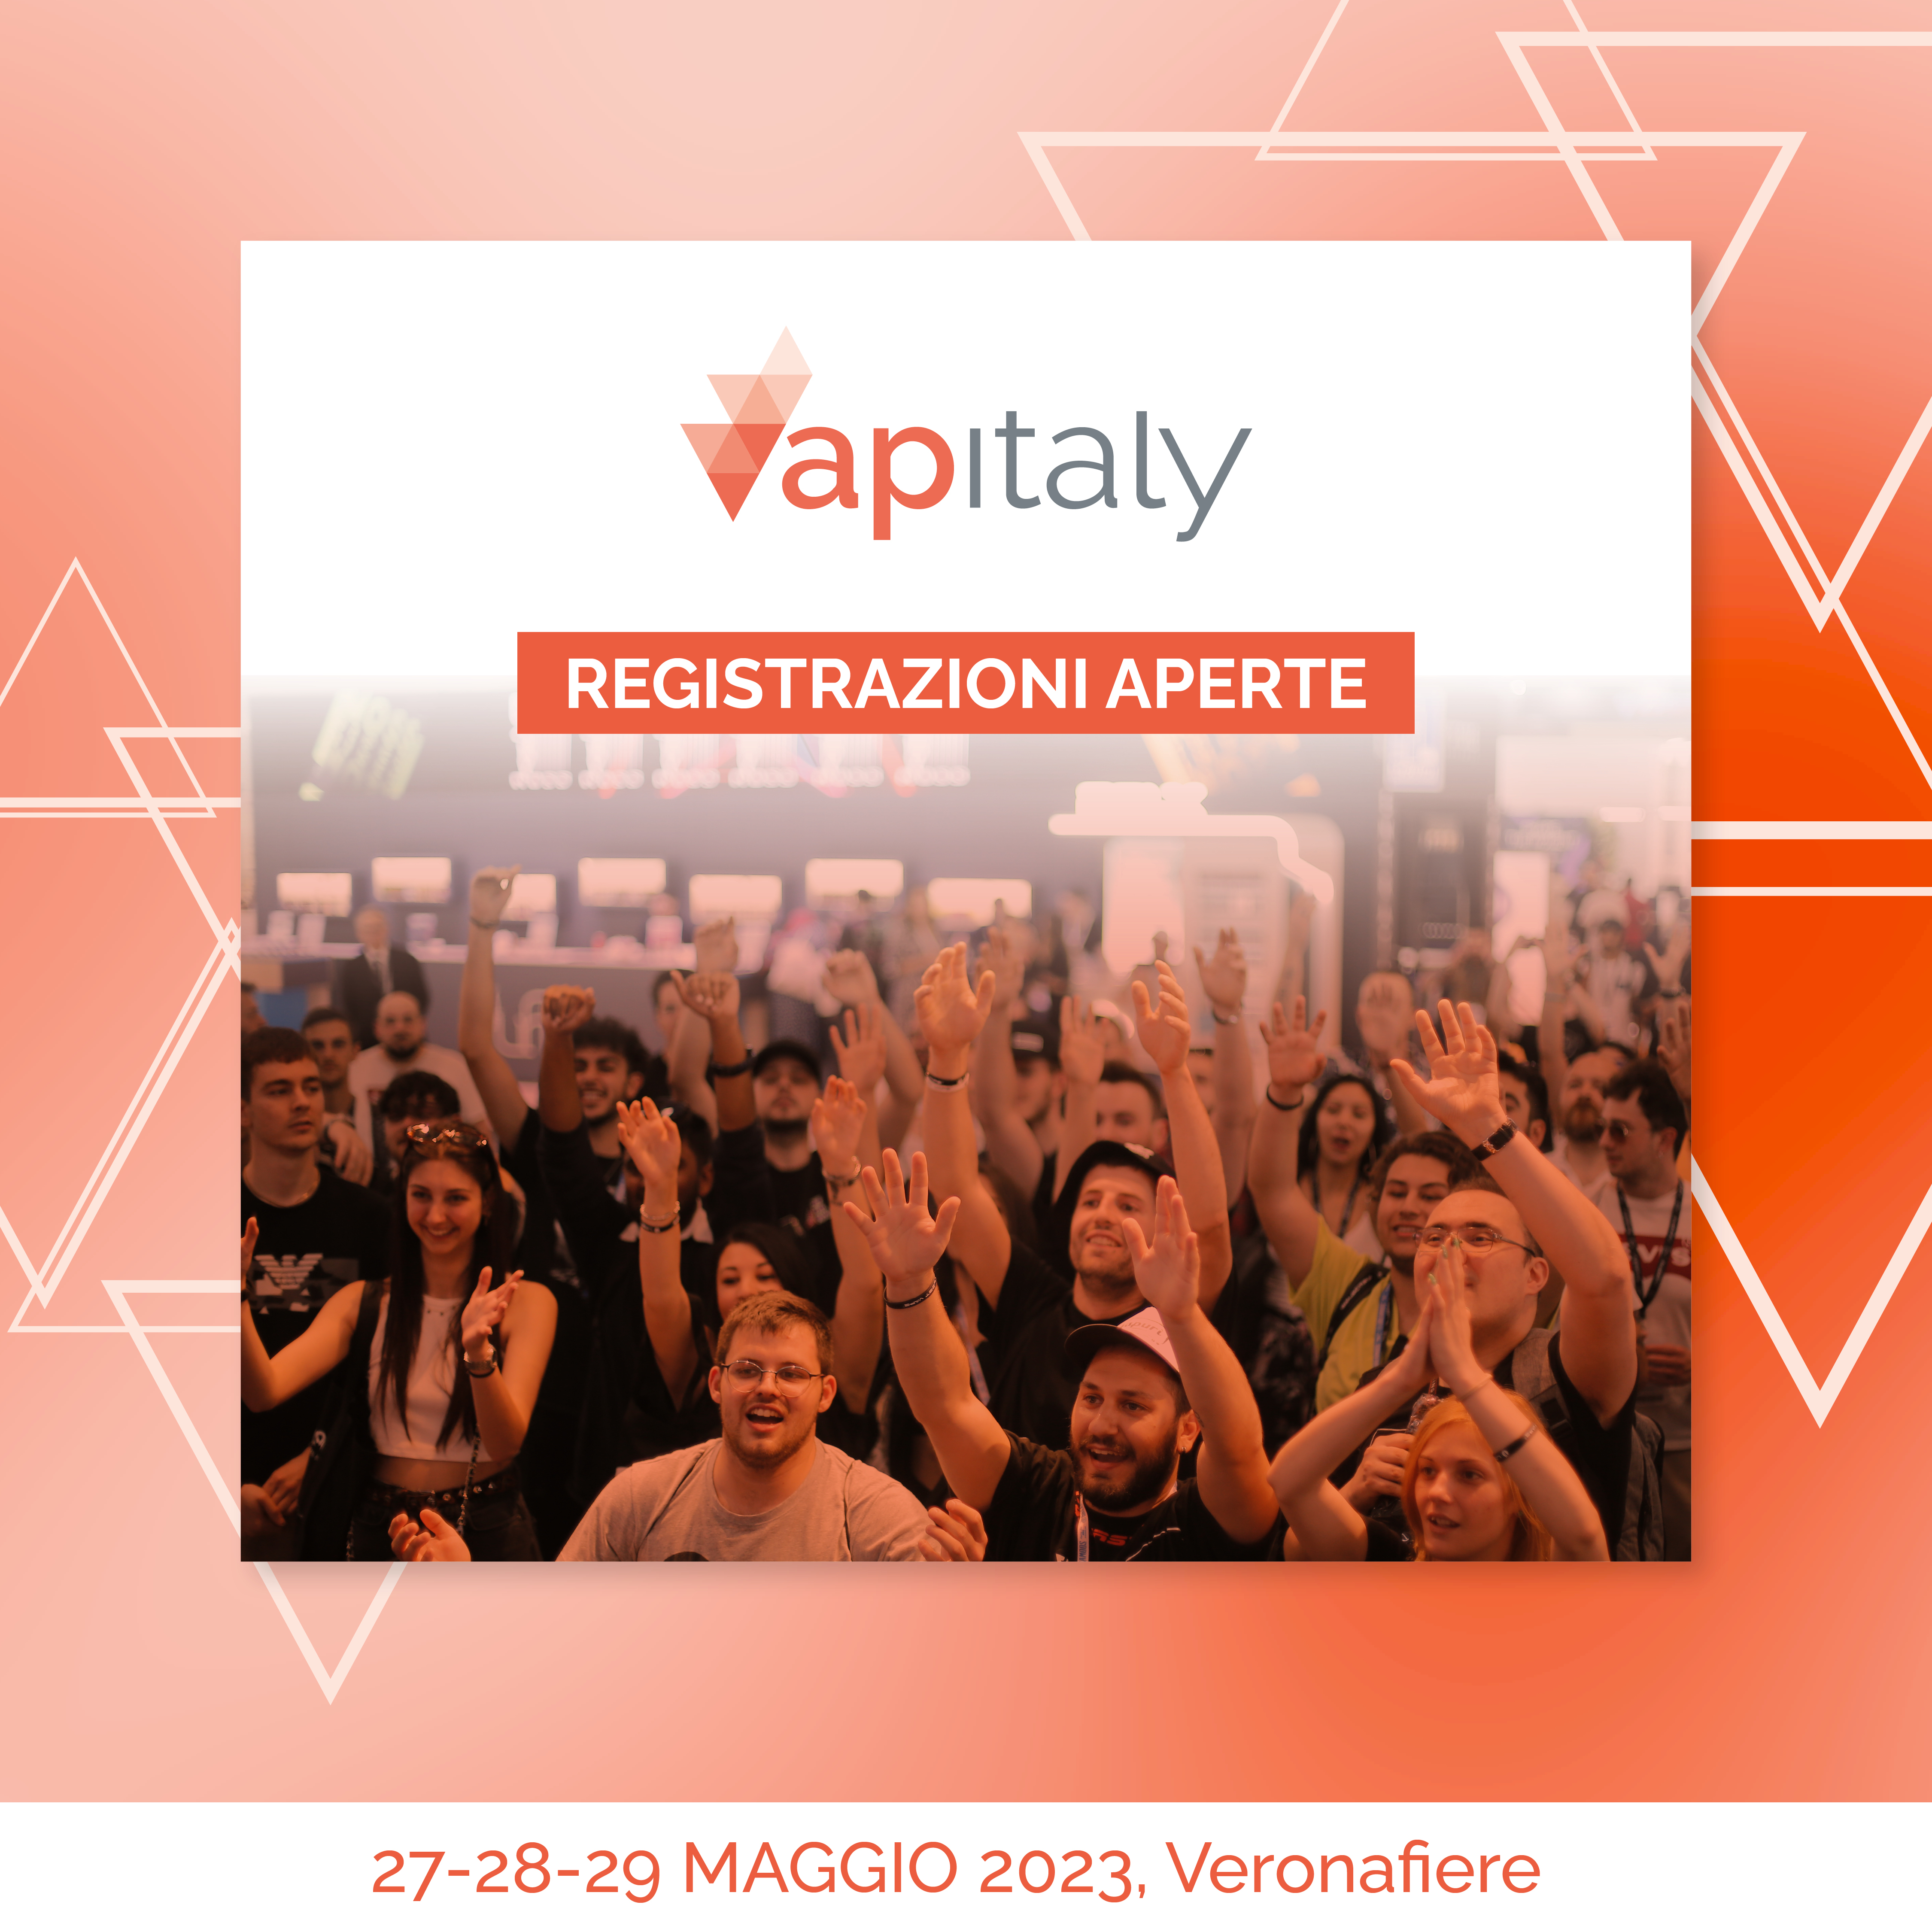 Registrations open for Vapitaly 2023